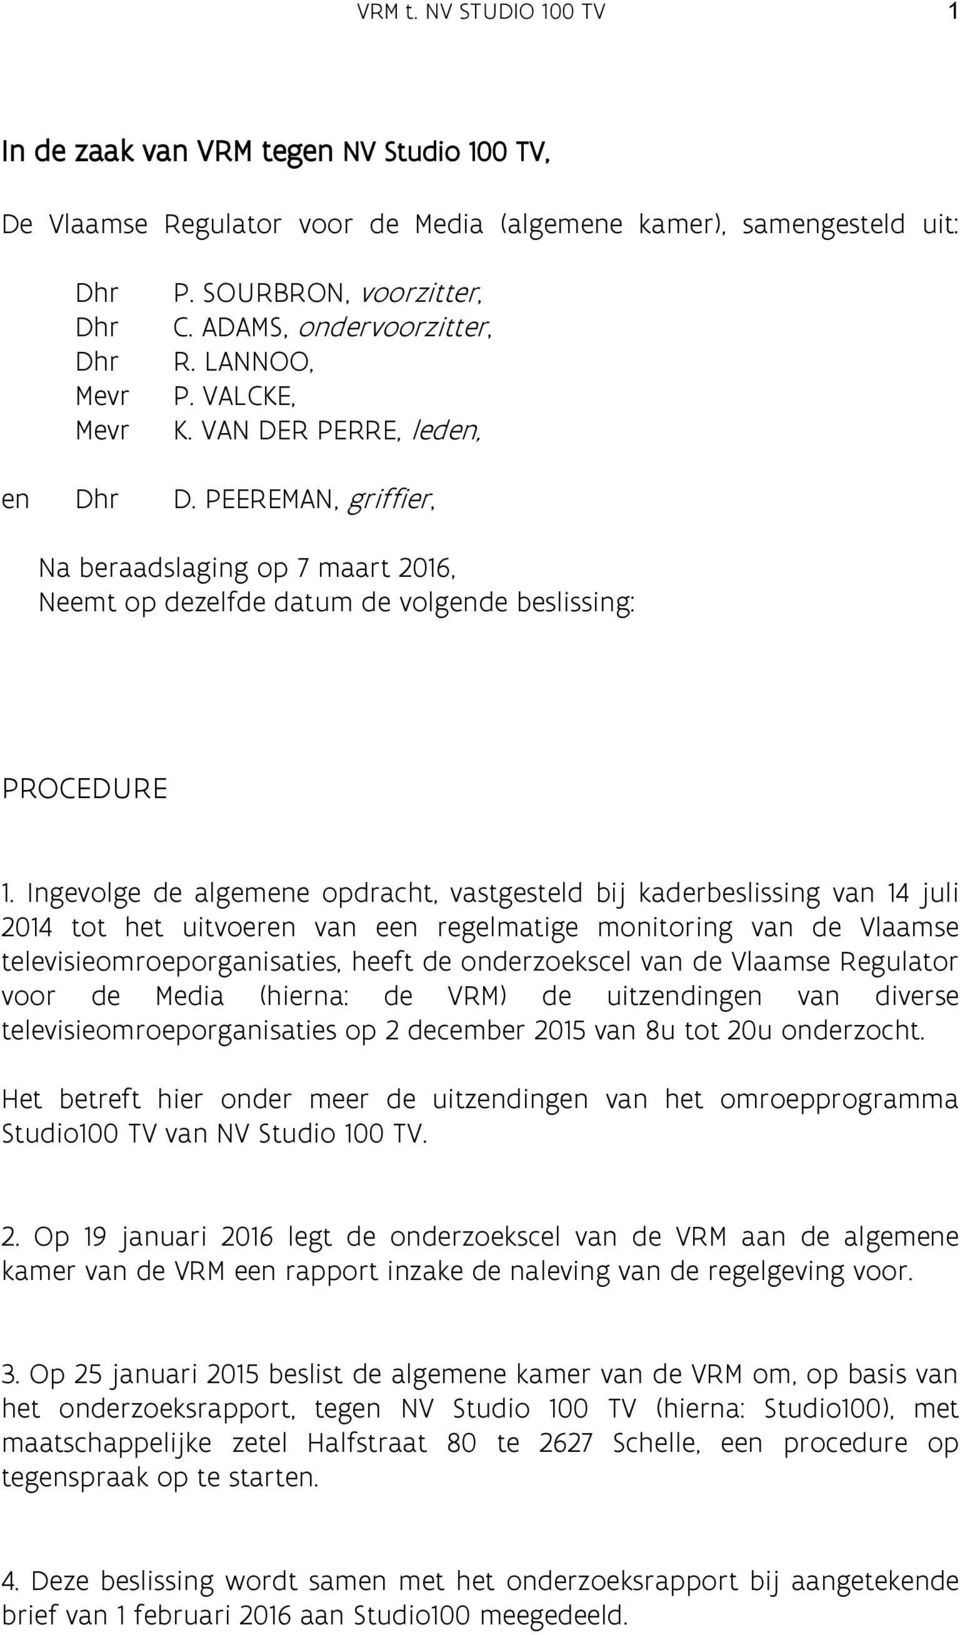 Ingevolge de algemene opdracht, vastgesteld bij kaderbeslissing van 14 juli 2014 tot het uitvoeren van een regelmatige monitoring van de Vlaamse televisieomroeporganisaties, heeft de onderzoekscel